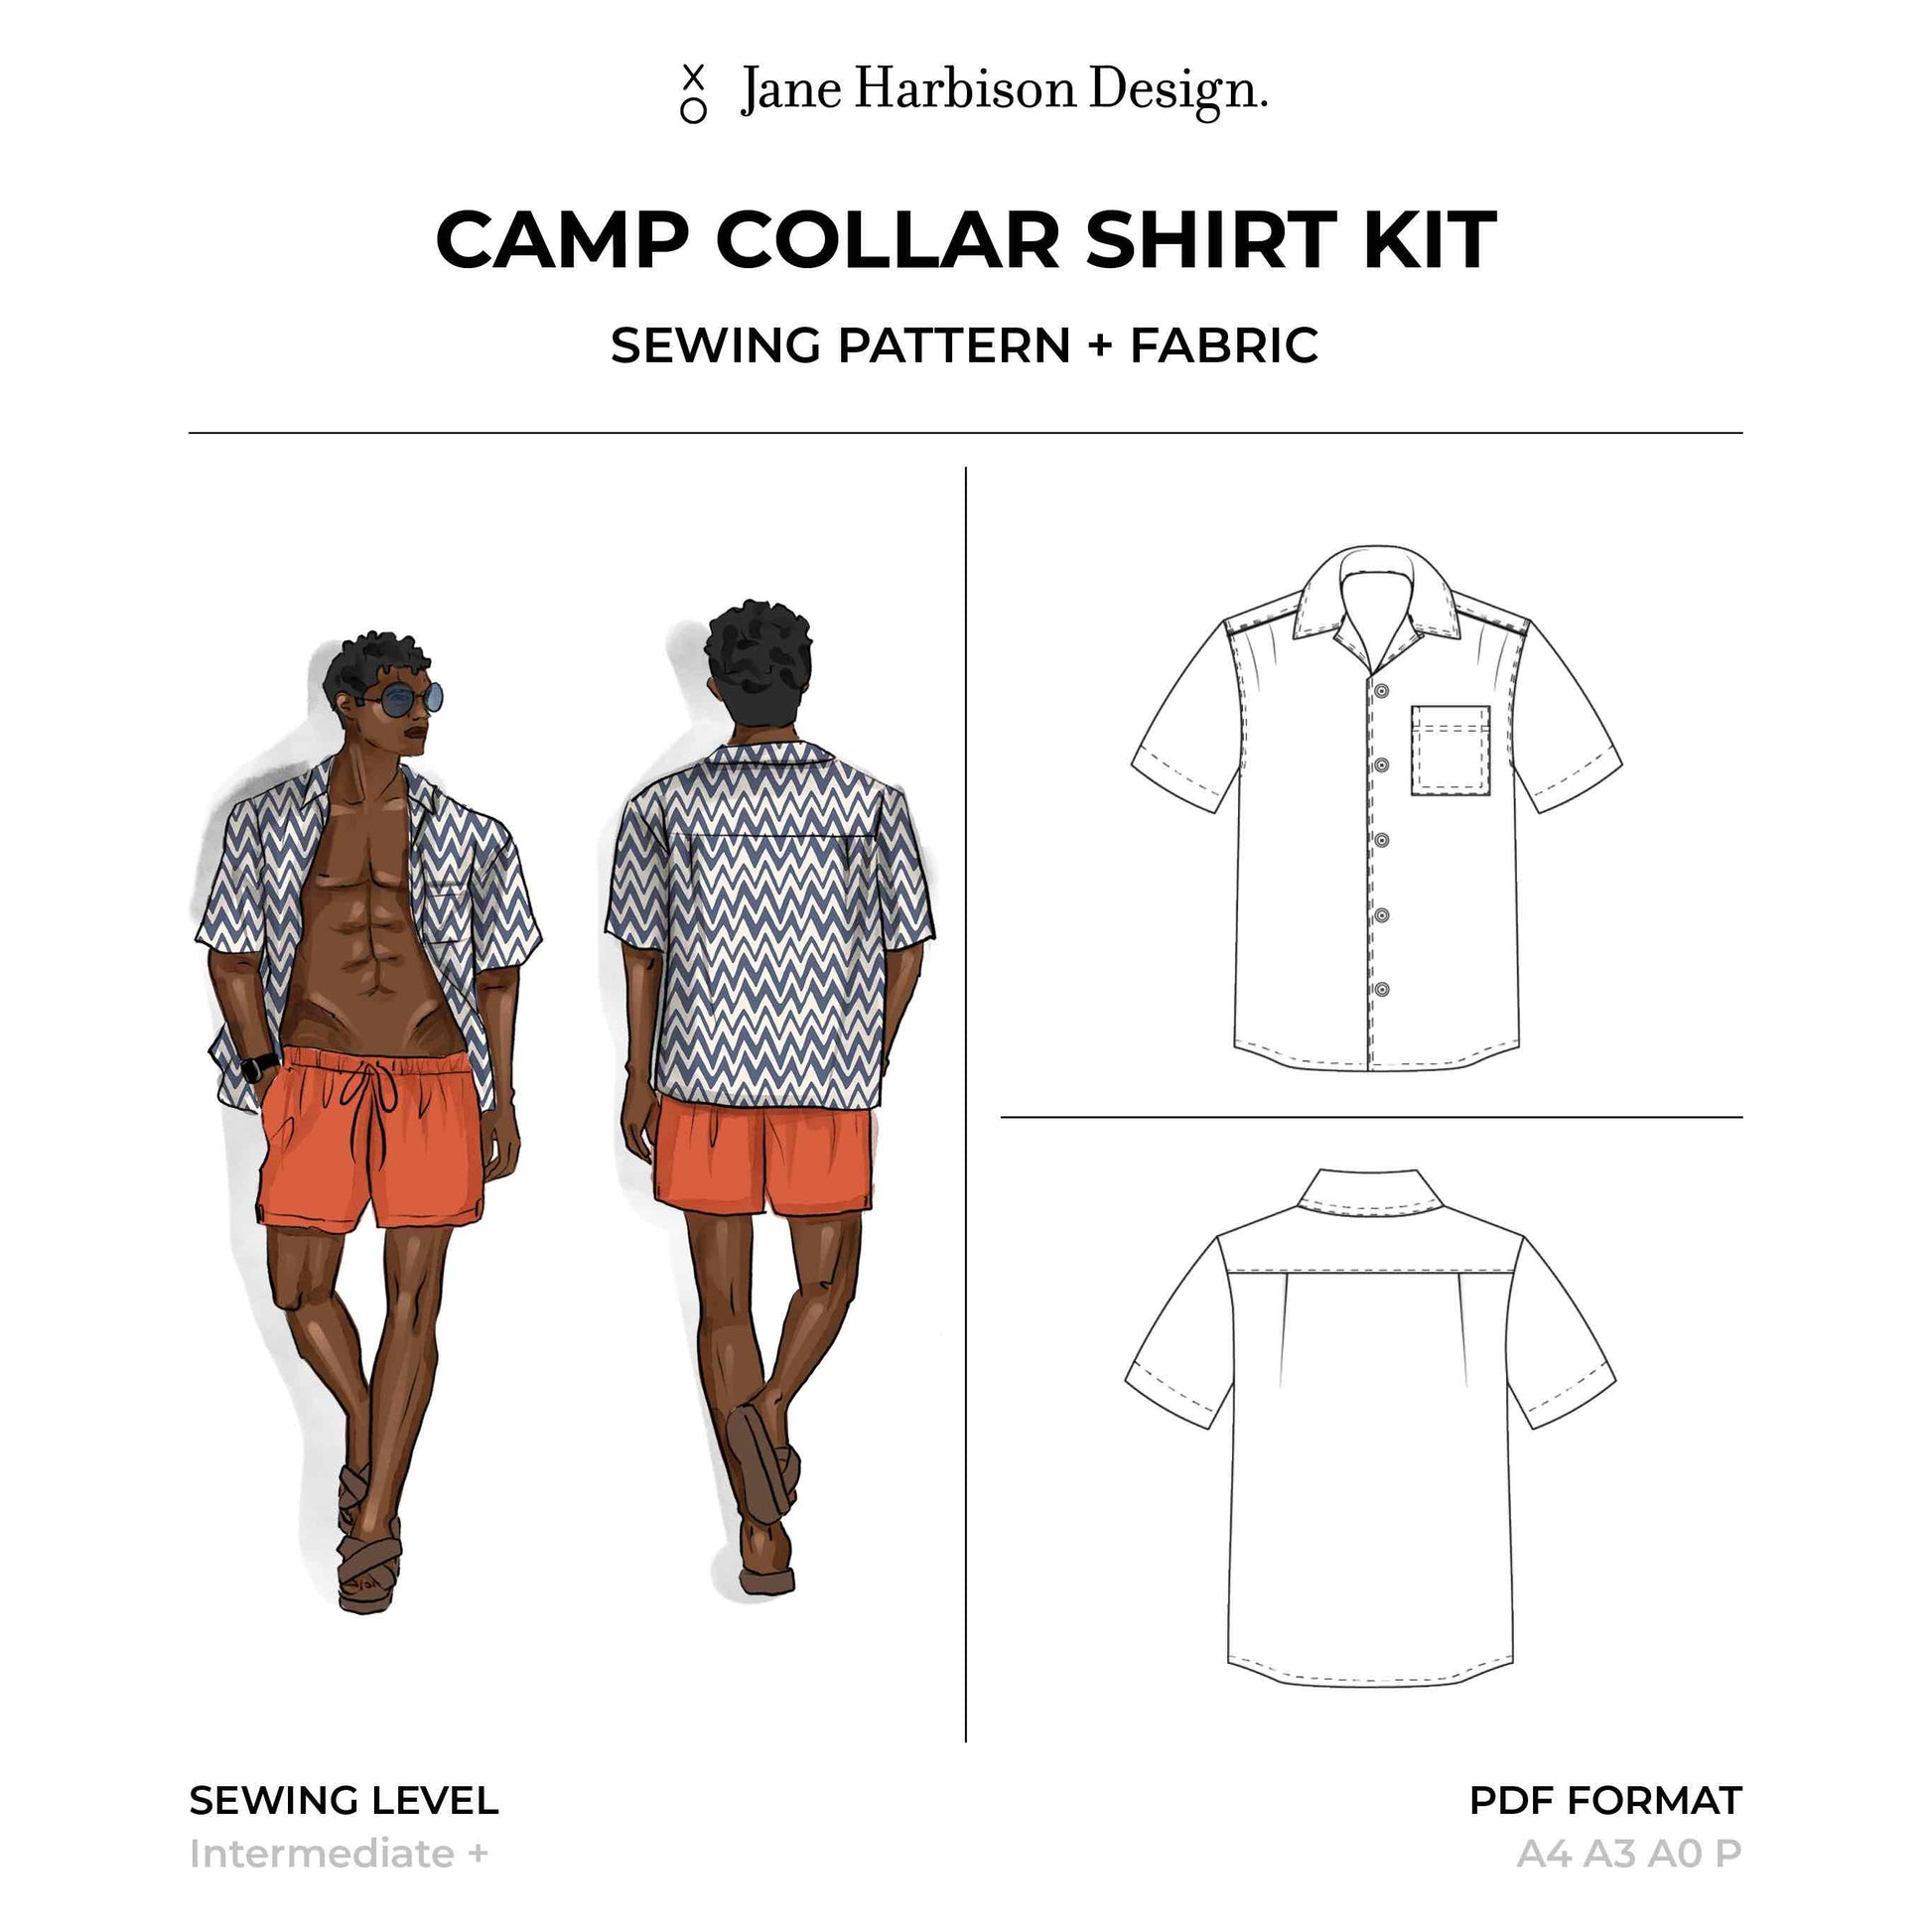 The Camp Collar Shirt